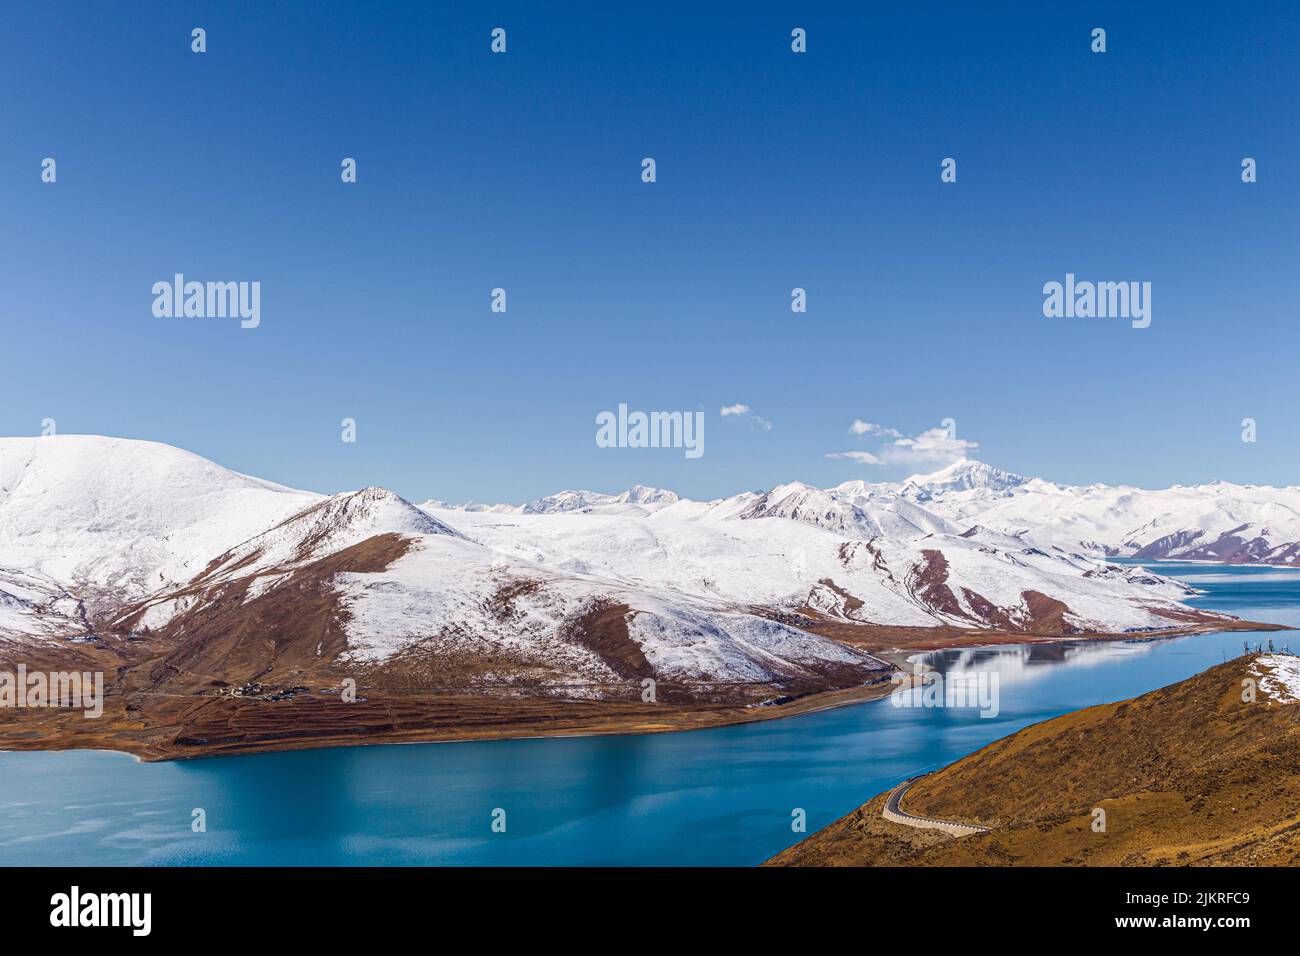 Le lac Yamdrok est un lac d'eau douce situé dans le comté de Nangartse, préfecture de Shannan, à environ 170 km (110 mi) au sud-ouest de Lhassa, capitale du Tibet en Chine Banque D'Images